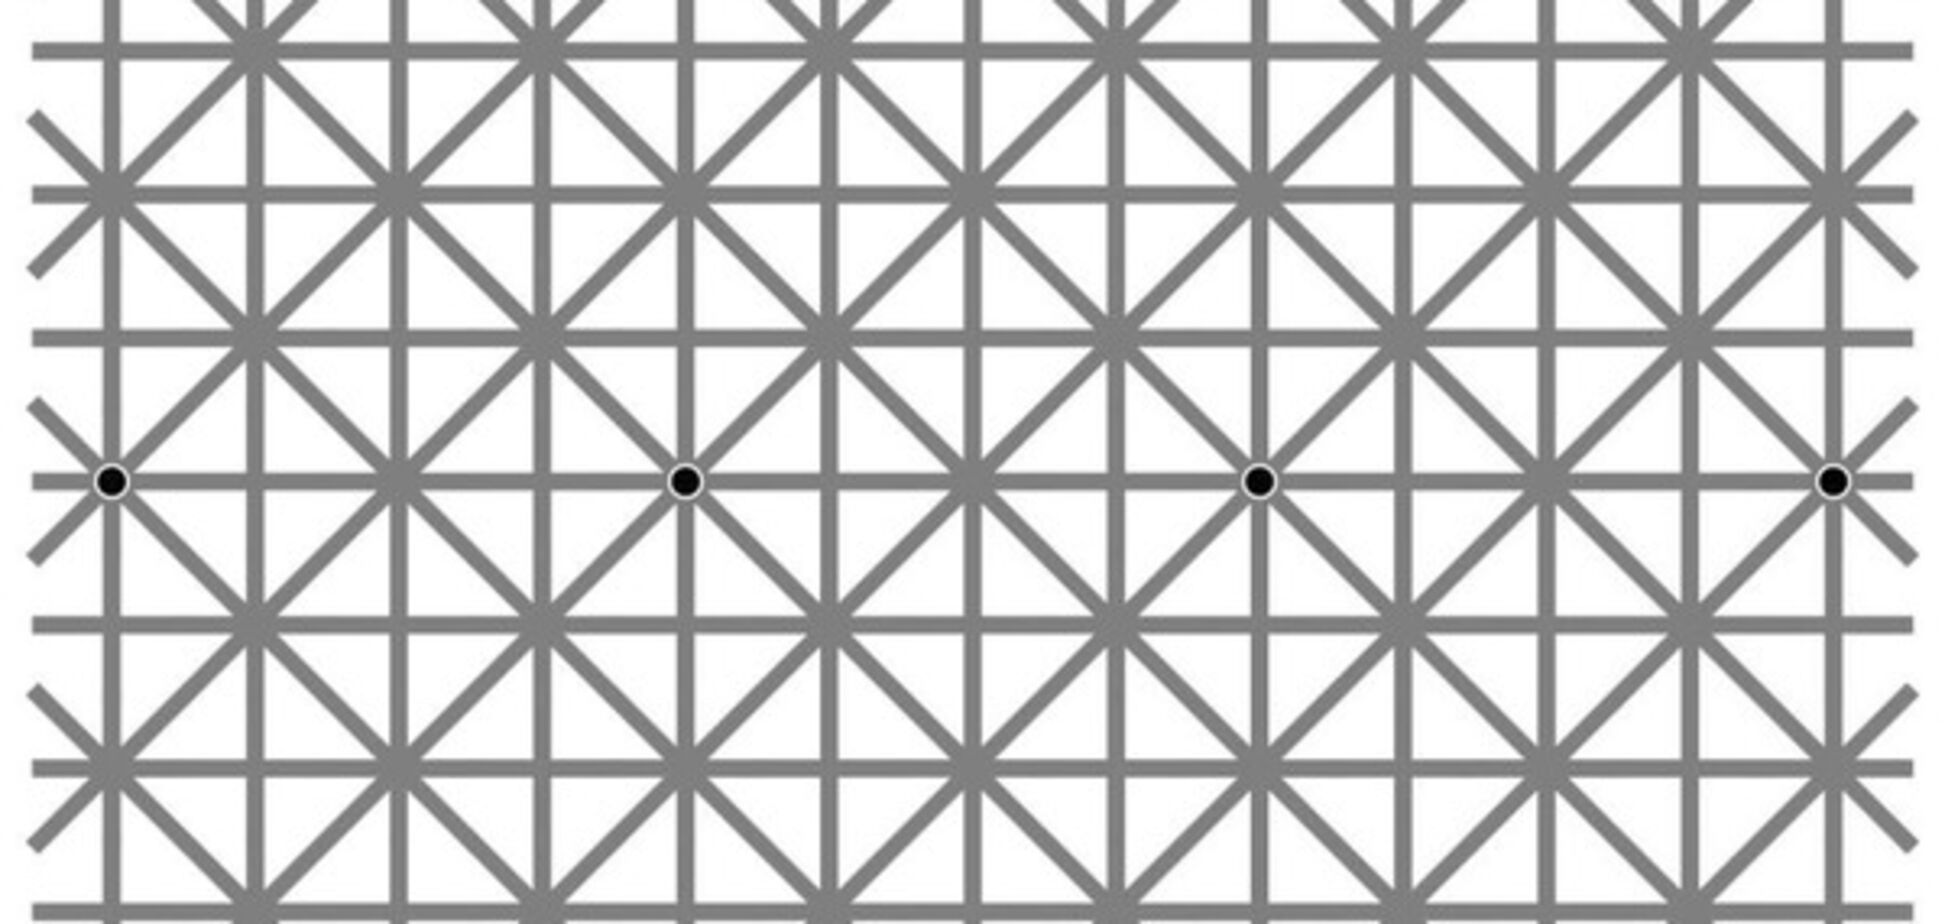 Попробуй рассмотри: оптическая иллюзия с точками стала вирусной в сети